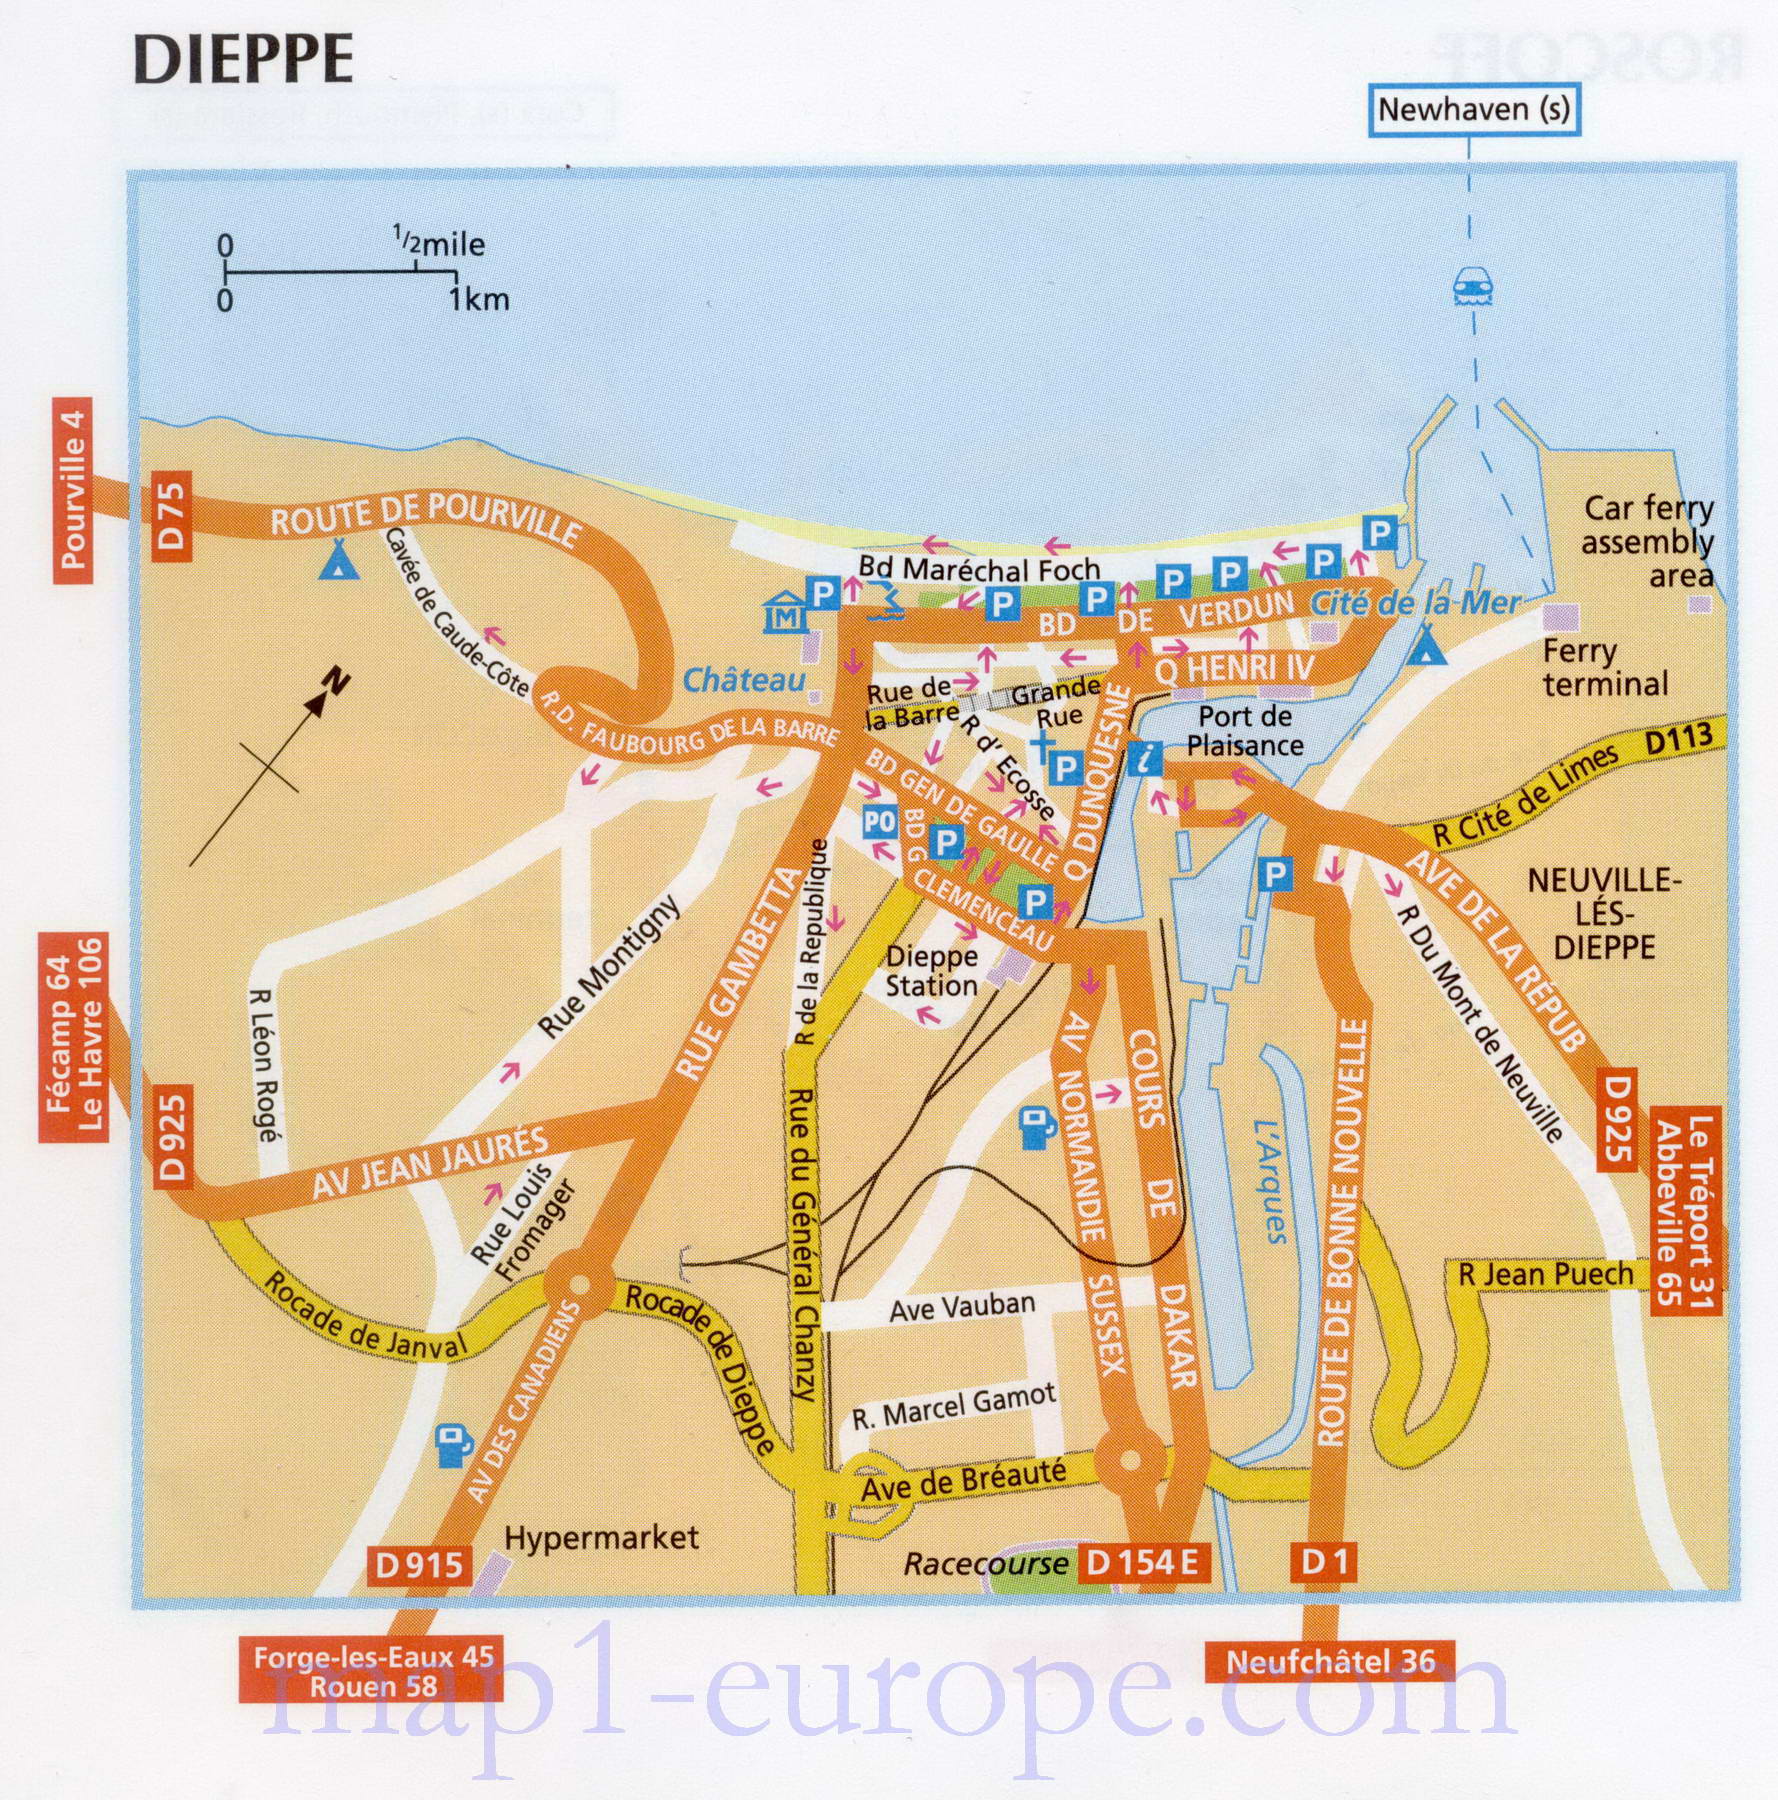 Карта Дьеппа. Автомобильная карта города порта Дьепп, Франция, A0 - 